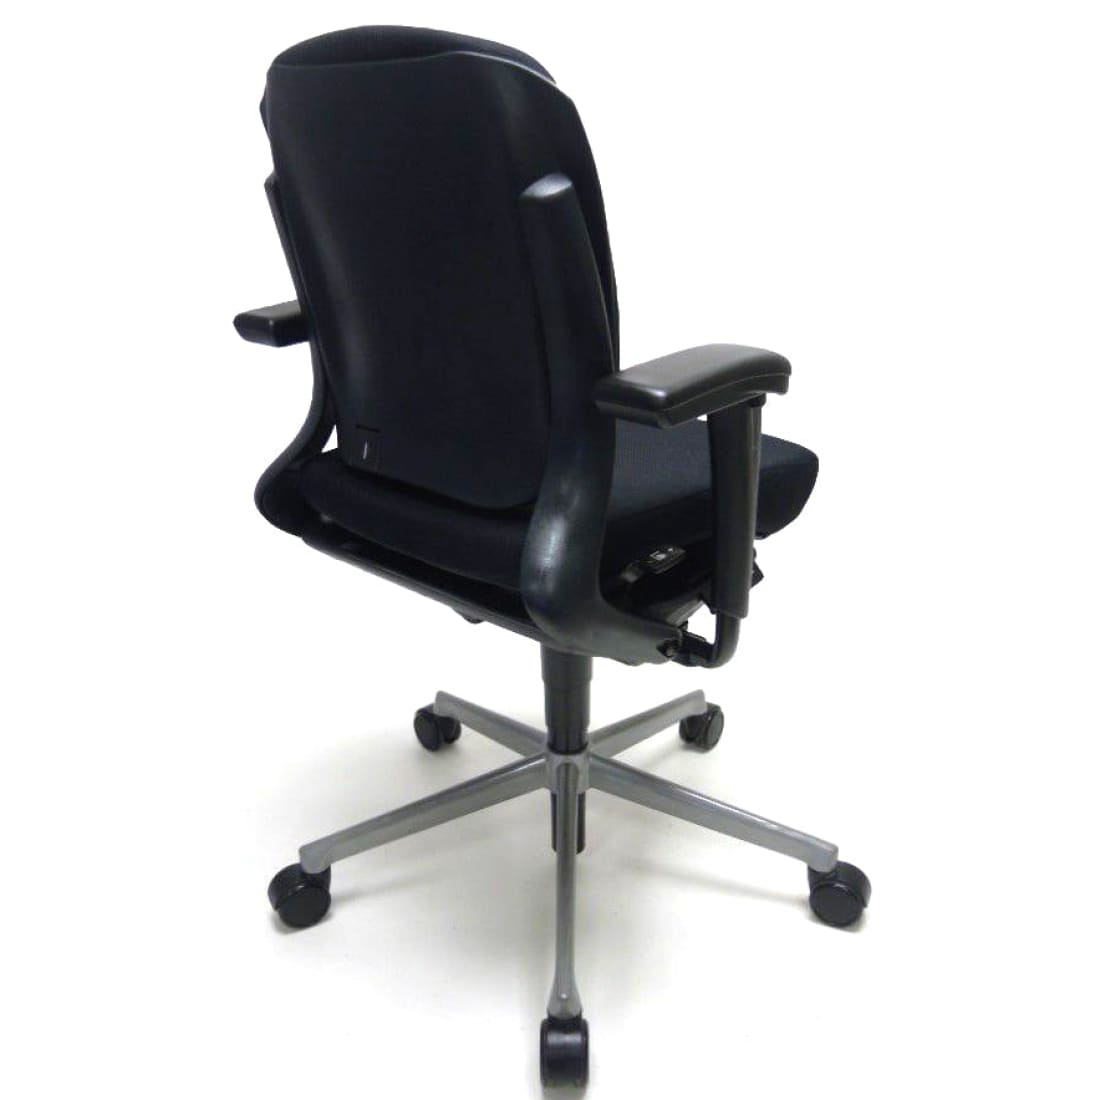 Refurbished bureaustoel ergonomisch ahrend lage – Workliving